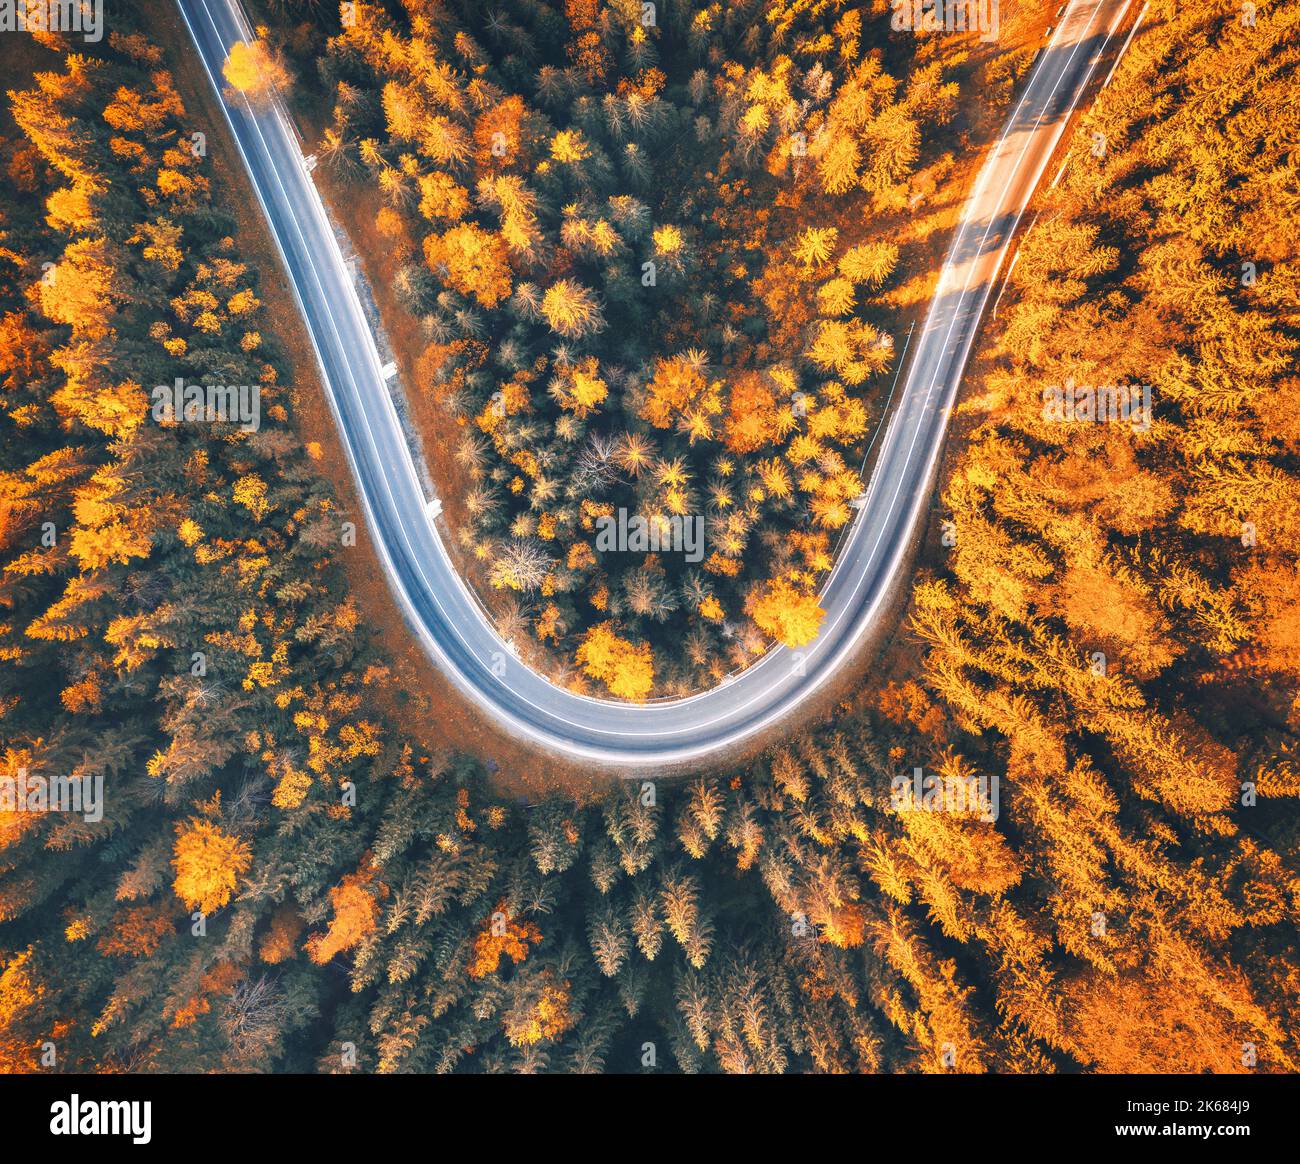 Vista aérea de la carretera sinuosa con coche en el colorido bosque de otoño Foto de stock